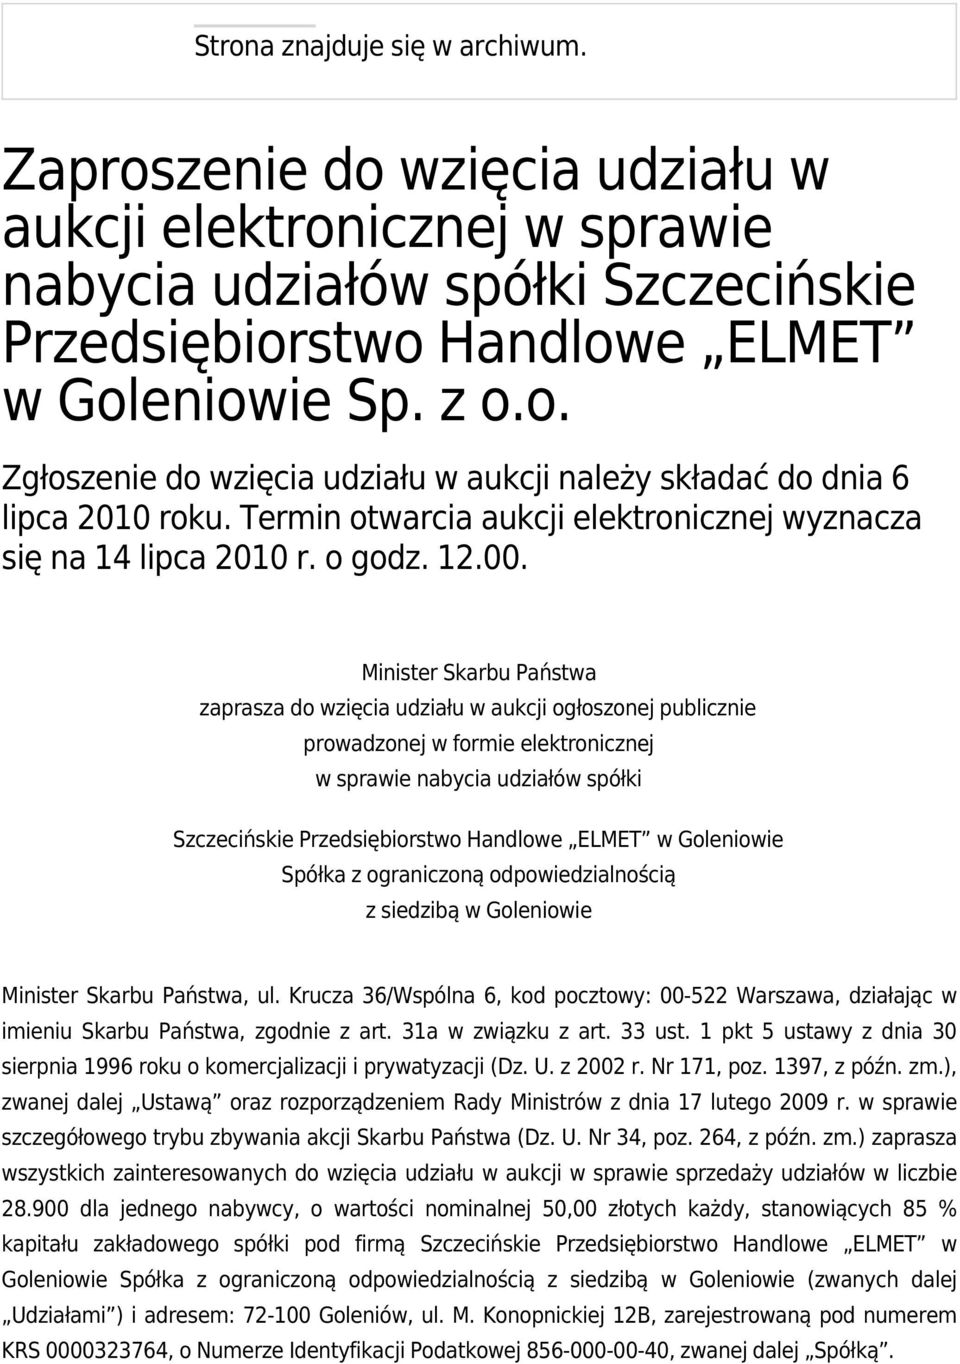 Minister Skarbu Państwa zaprasza do wzięcia udziału w aukcji ogłoszonej publicznie prowadzonej w formie elektronicznej w sprawie nabycia udziałów spółki Szczecińskie Przedsiębiorstwo Handlowe ELMET w